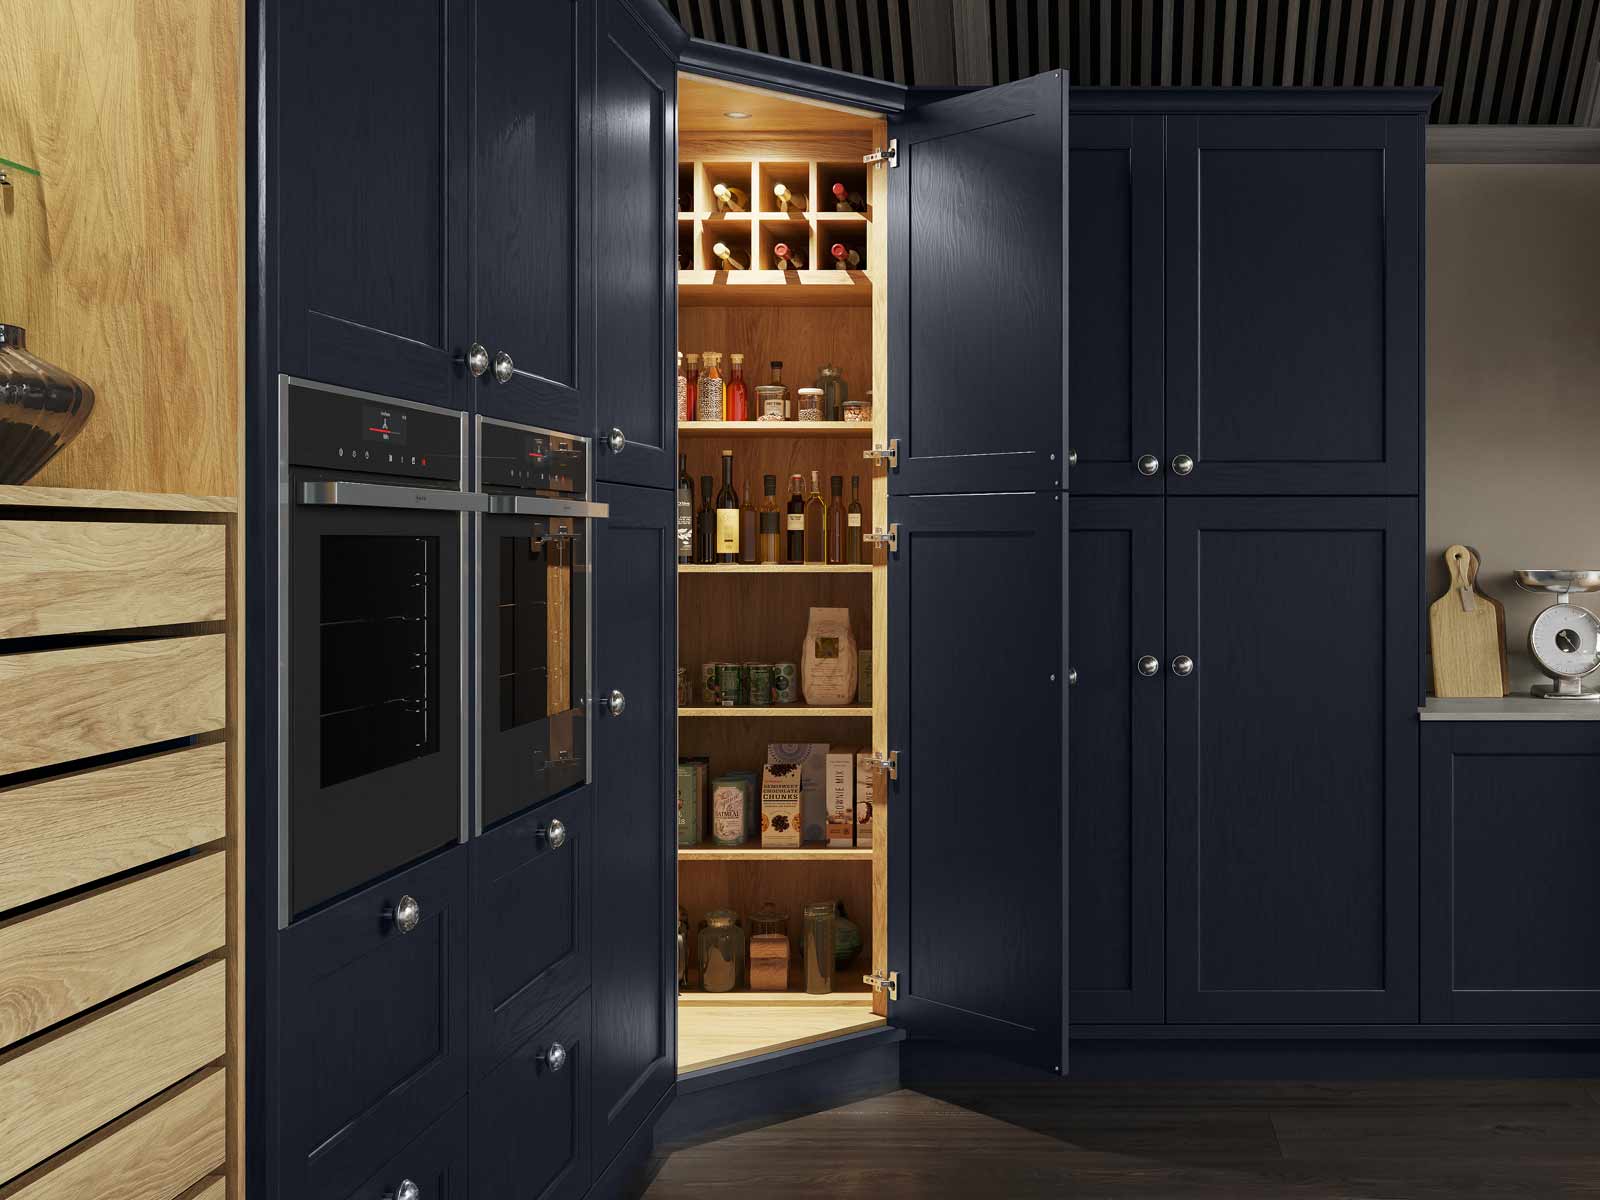 Corner kitchen pantry storage cabinets demonstrating pantry organisation